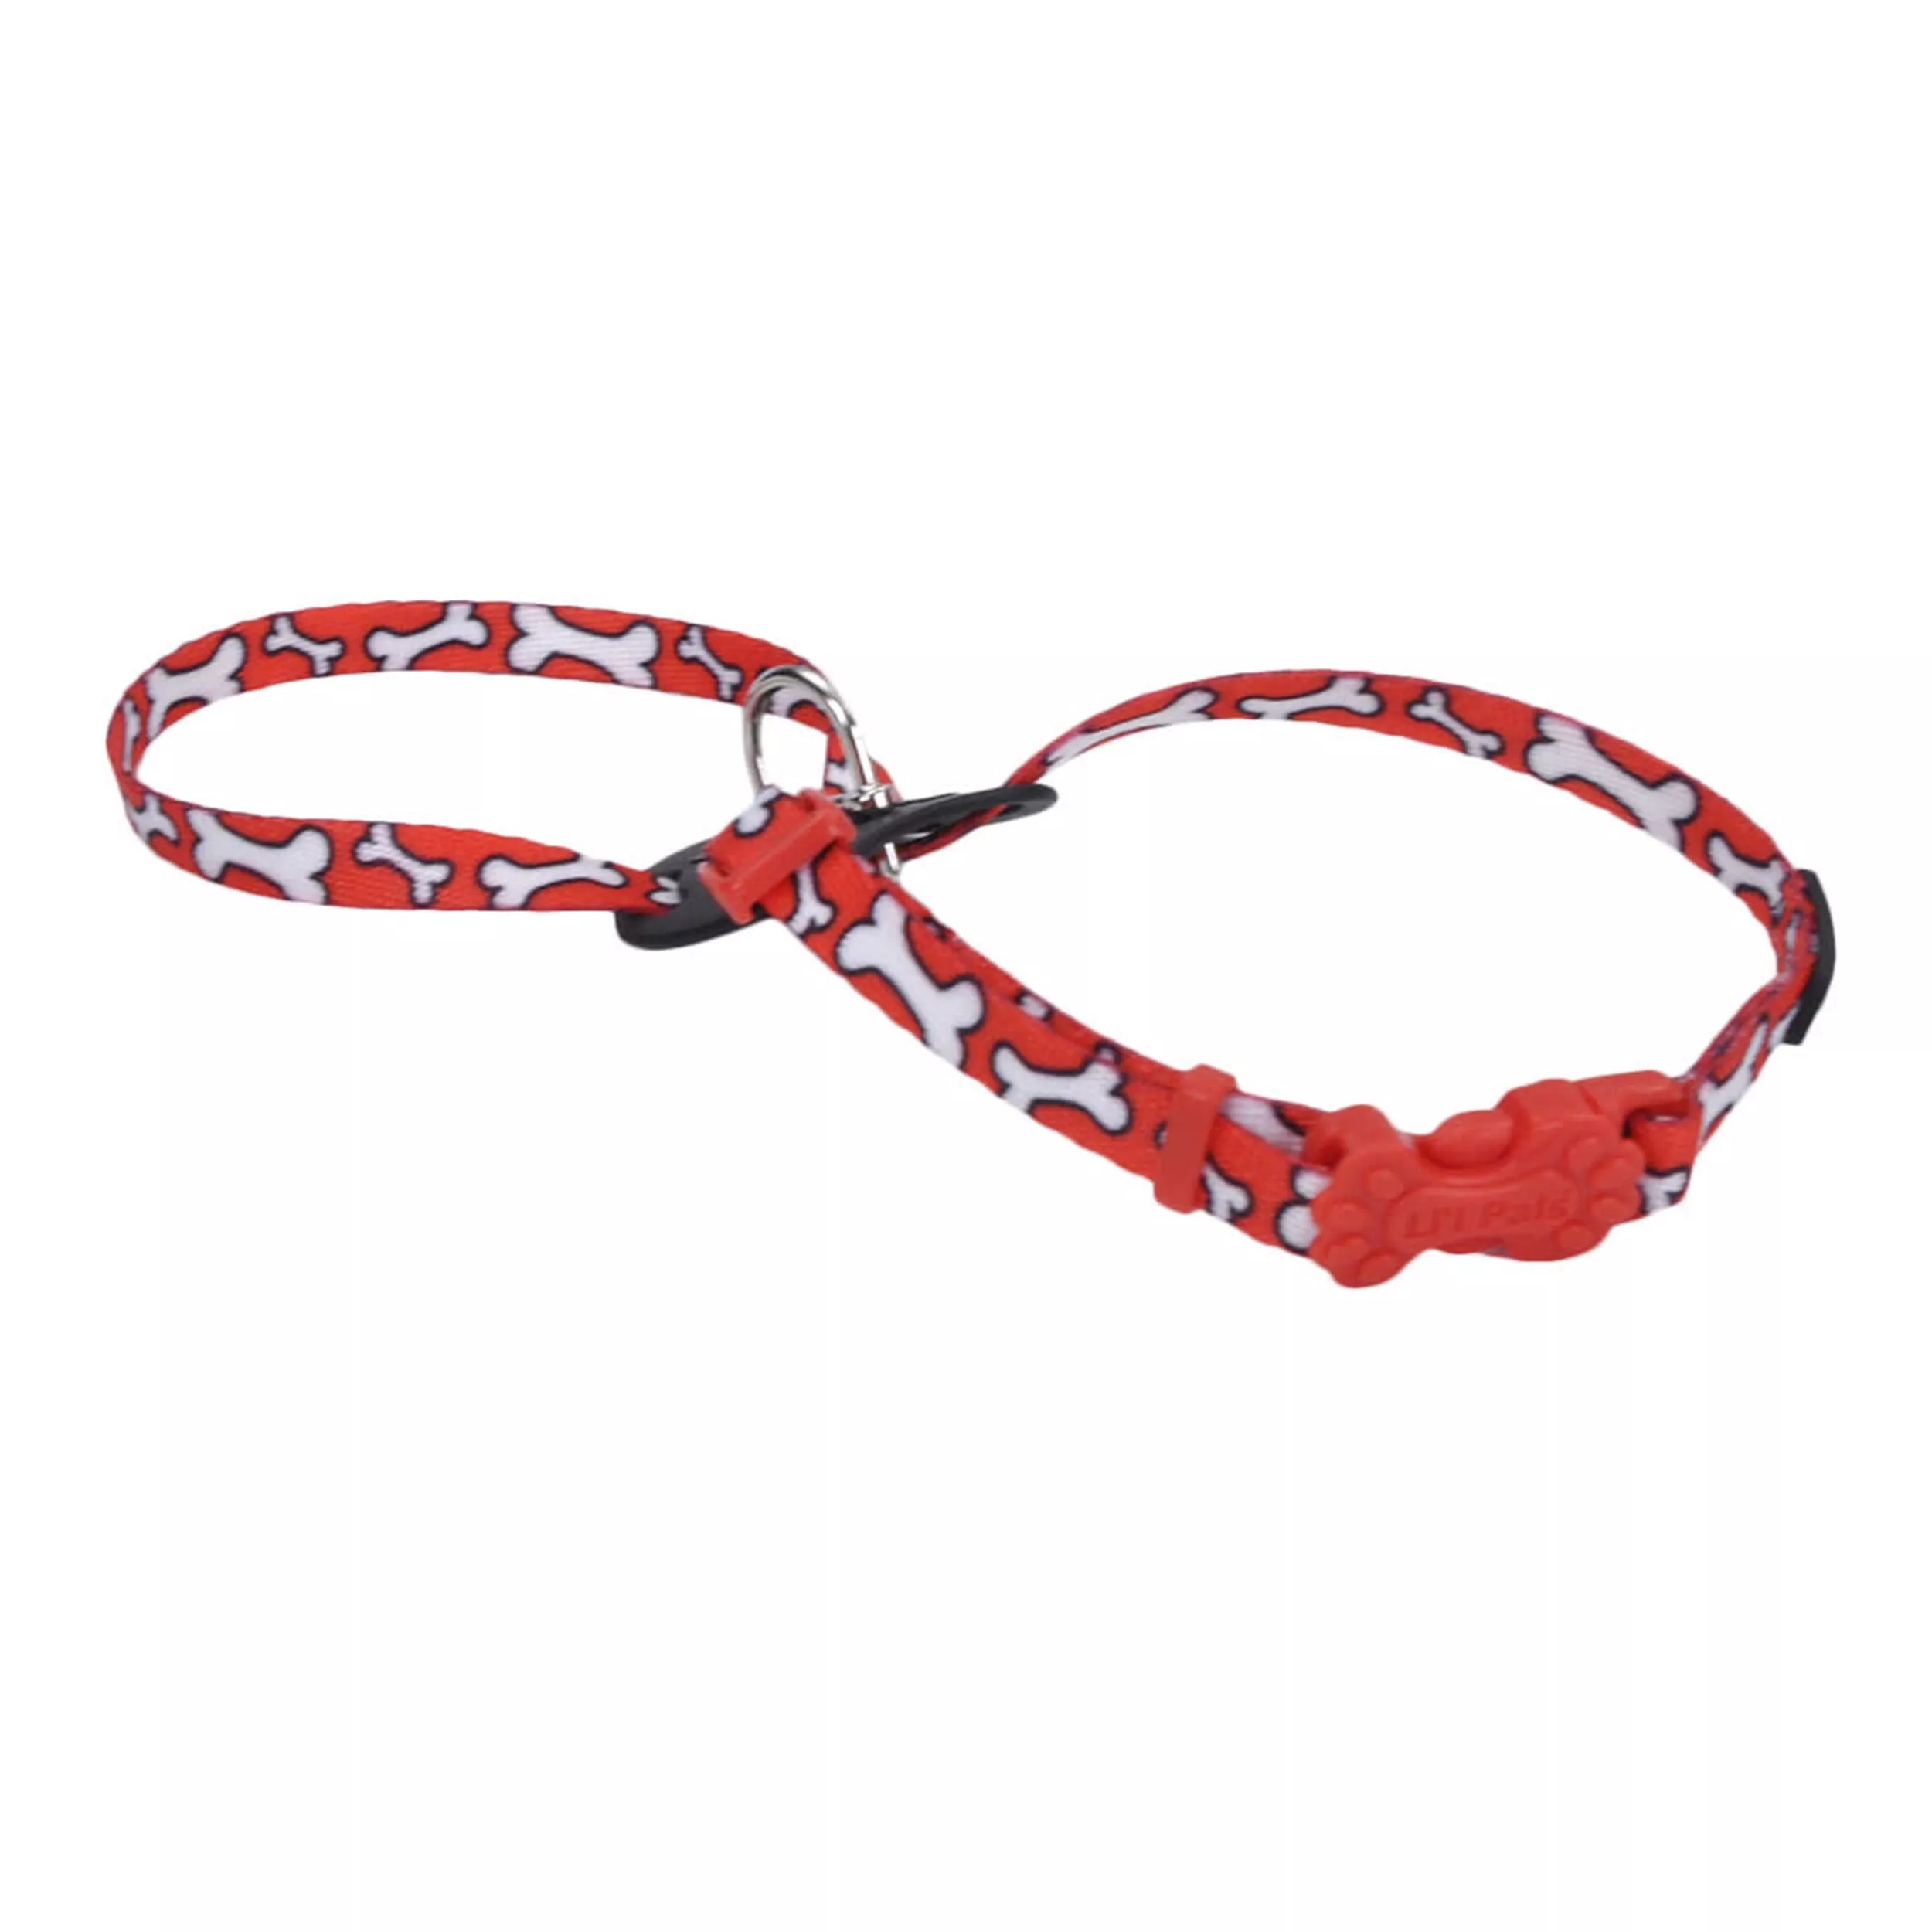 Li'l Pals® Adjustable Patterned Dog Harness